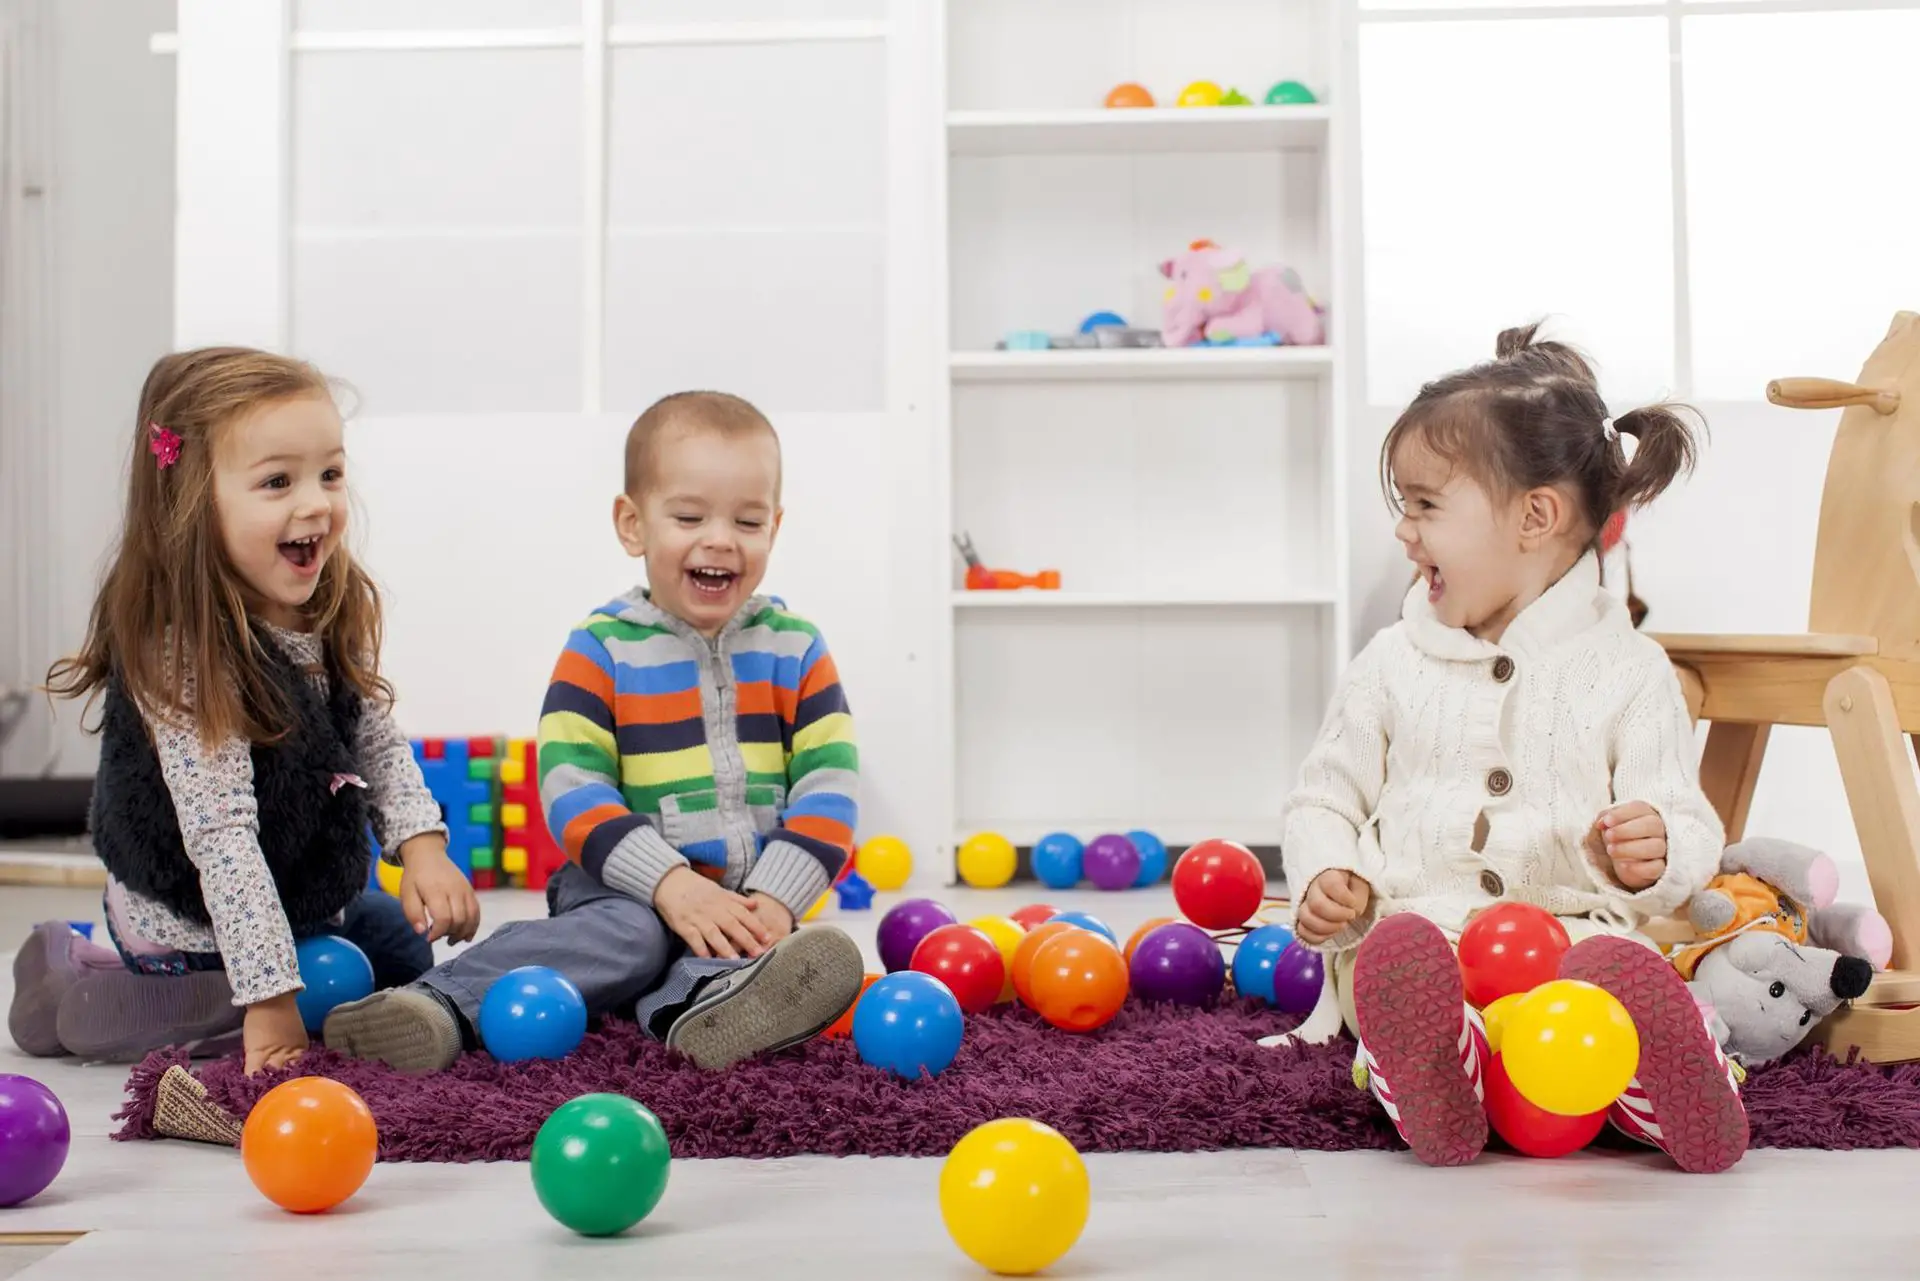 juegos de aprendizaje para ninos encesta la pelota de ping pong